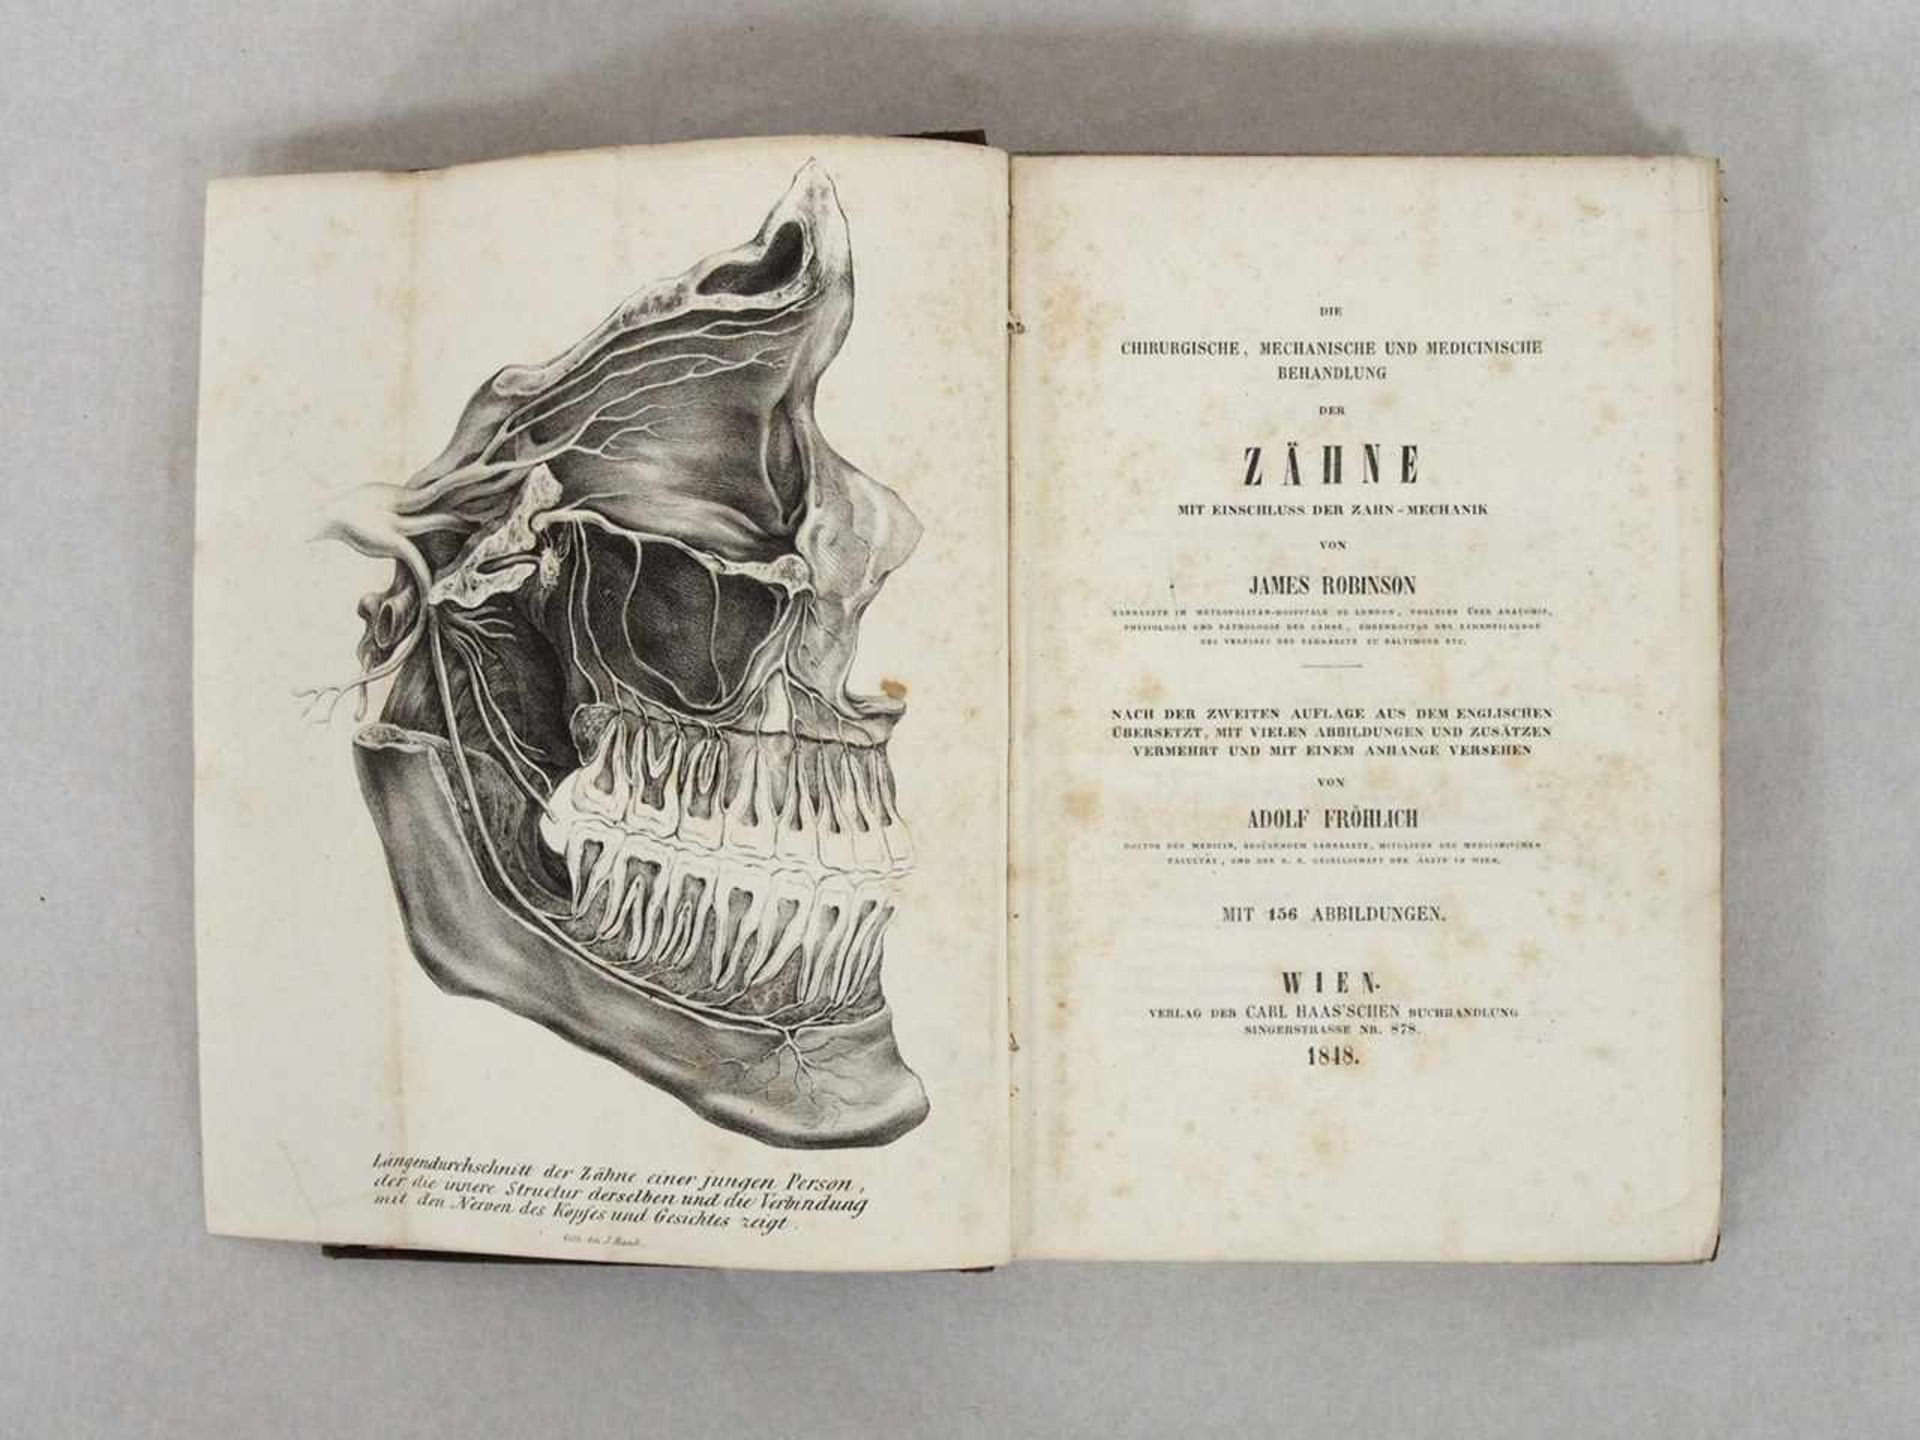 FRÖHLICH, AdolfDie chirugische....Behandlung der Zähne..Wien 1848 (Originaleinband)- - -25.00 %